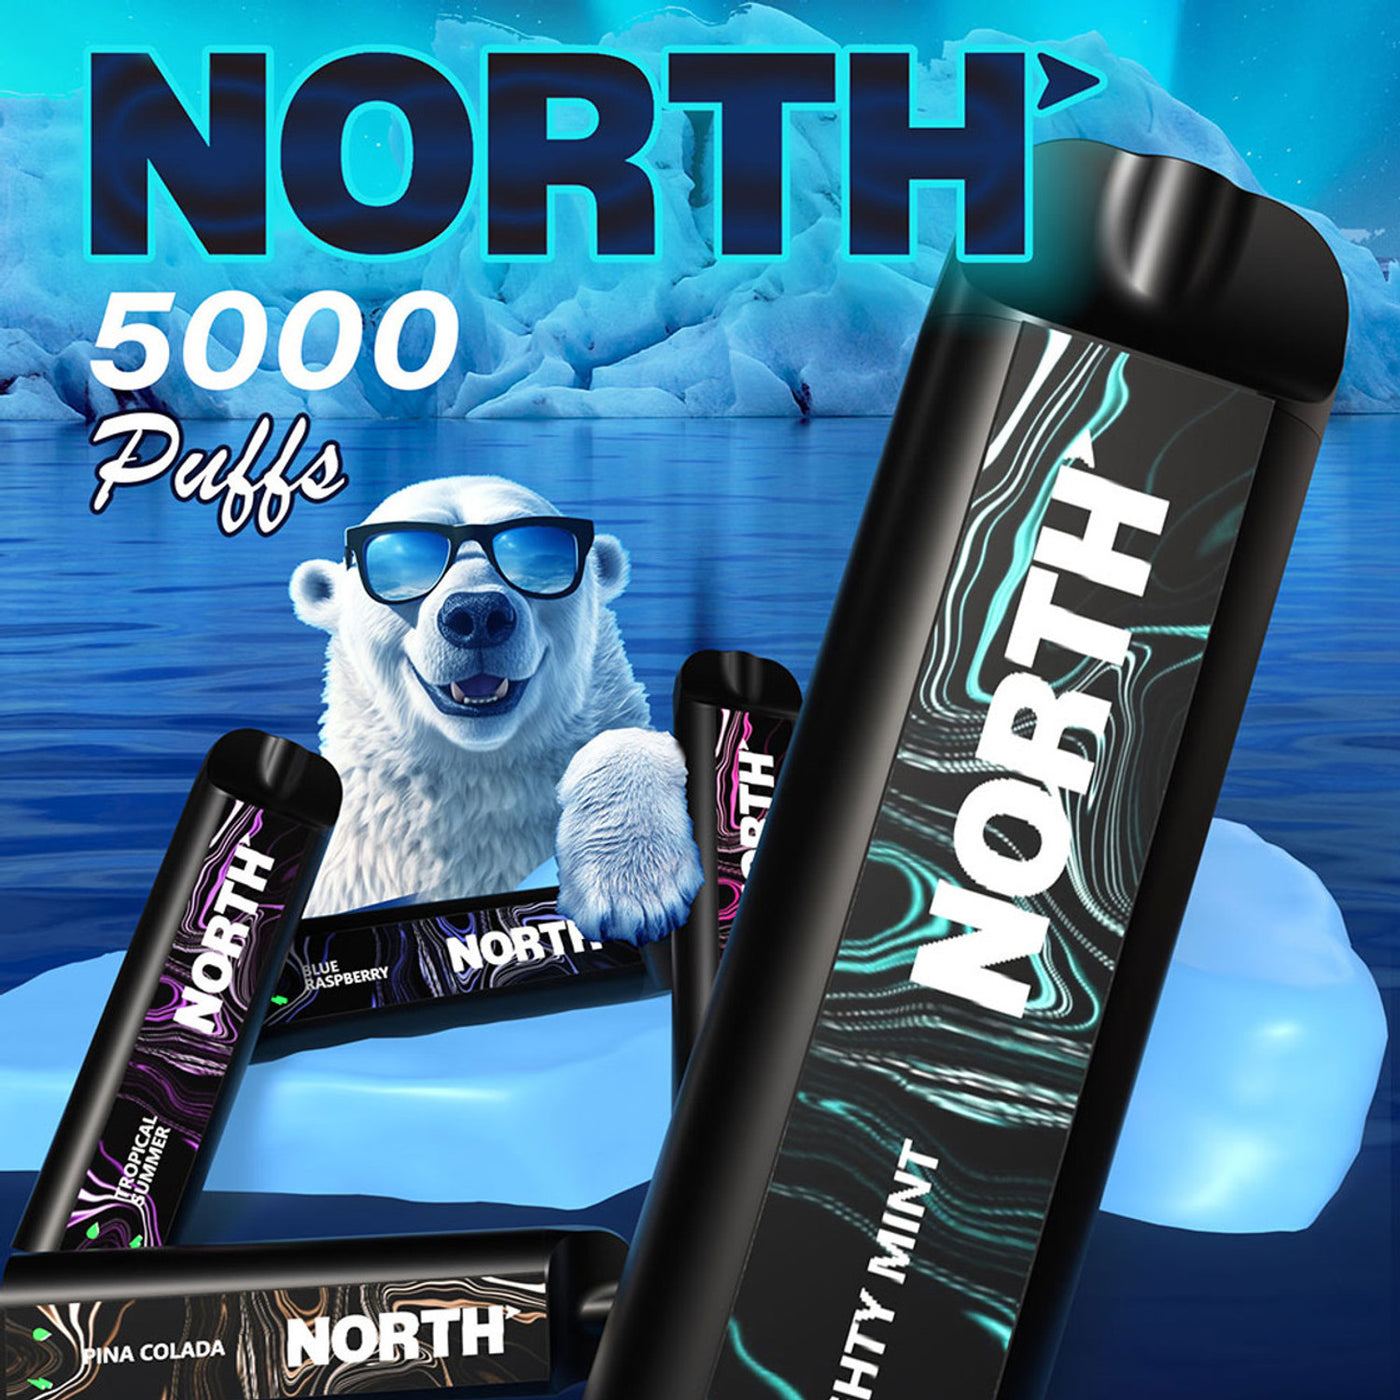 North 5000